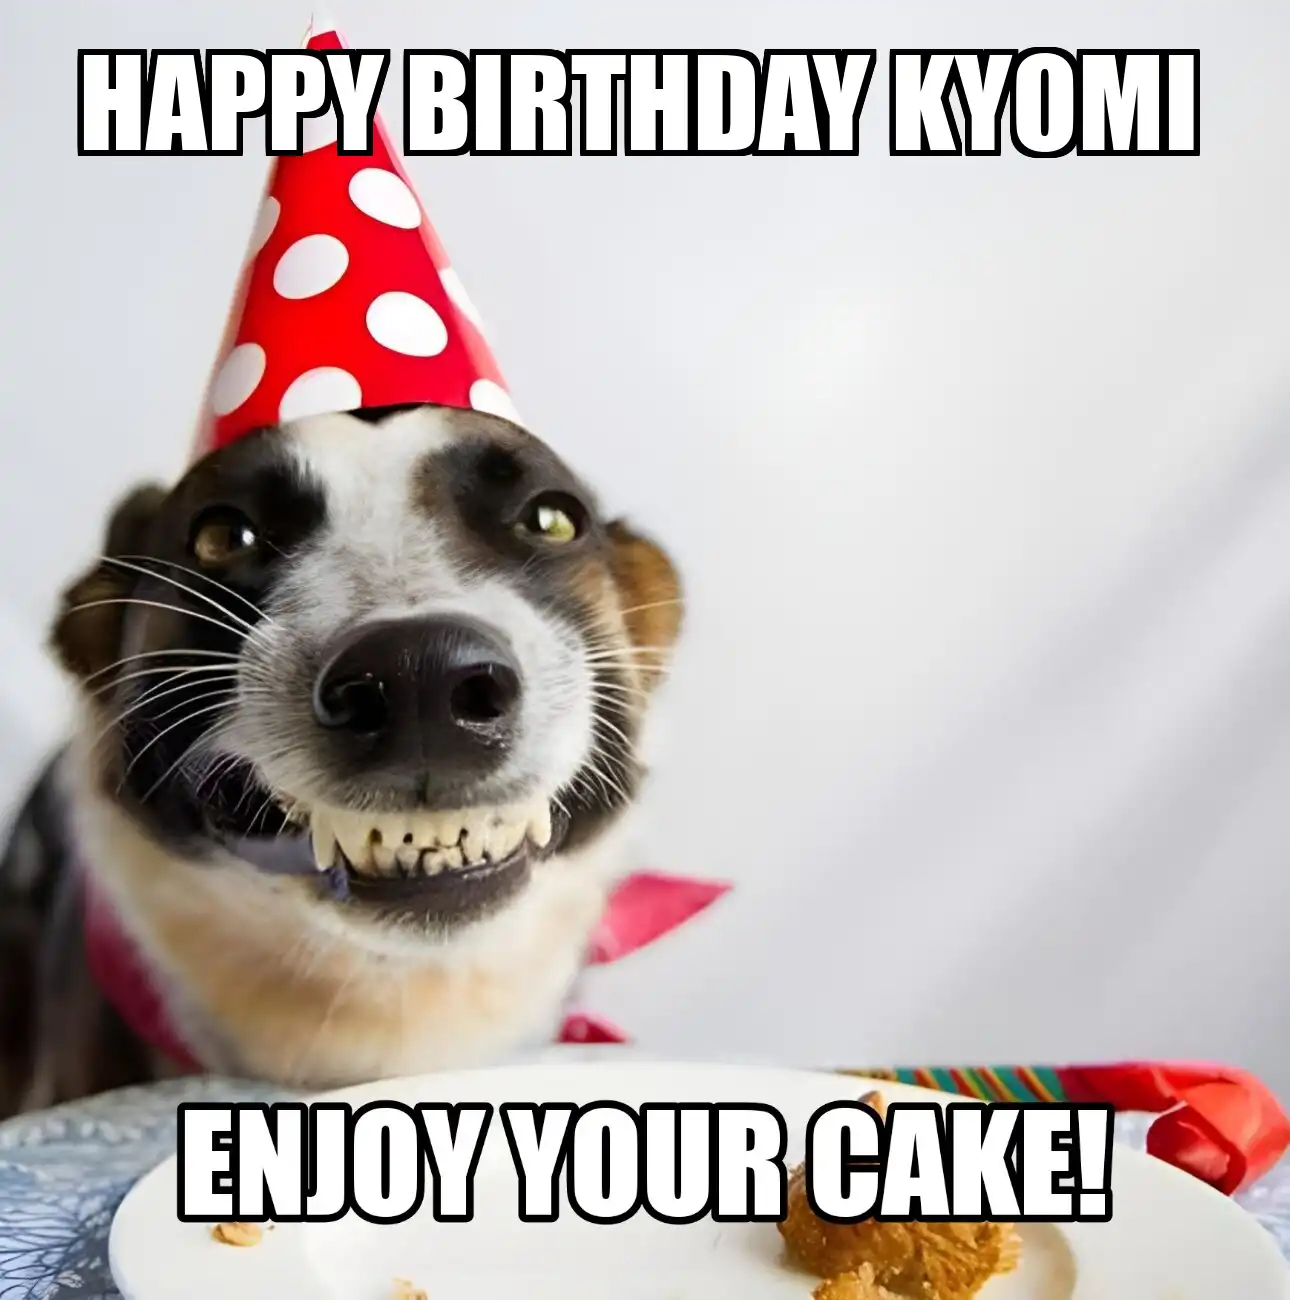 Happy Birthday Kyomi Enjoy Your Cake Dog Meme